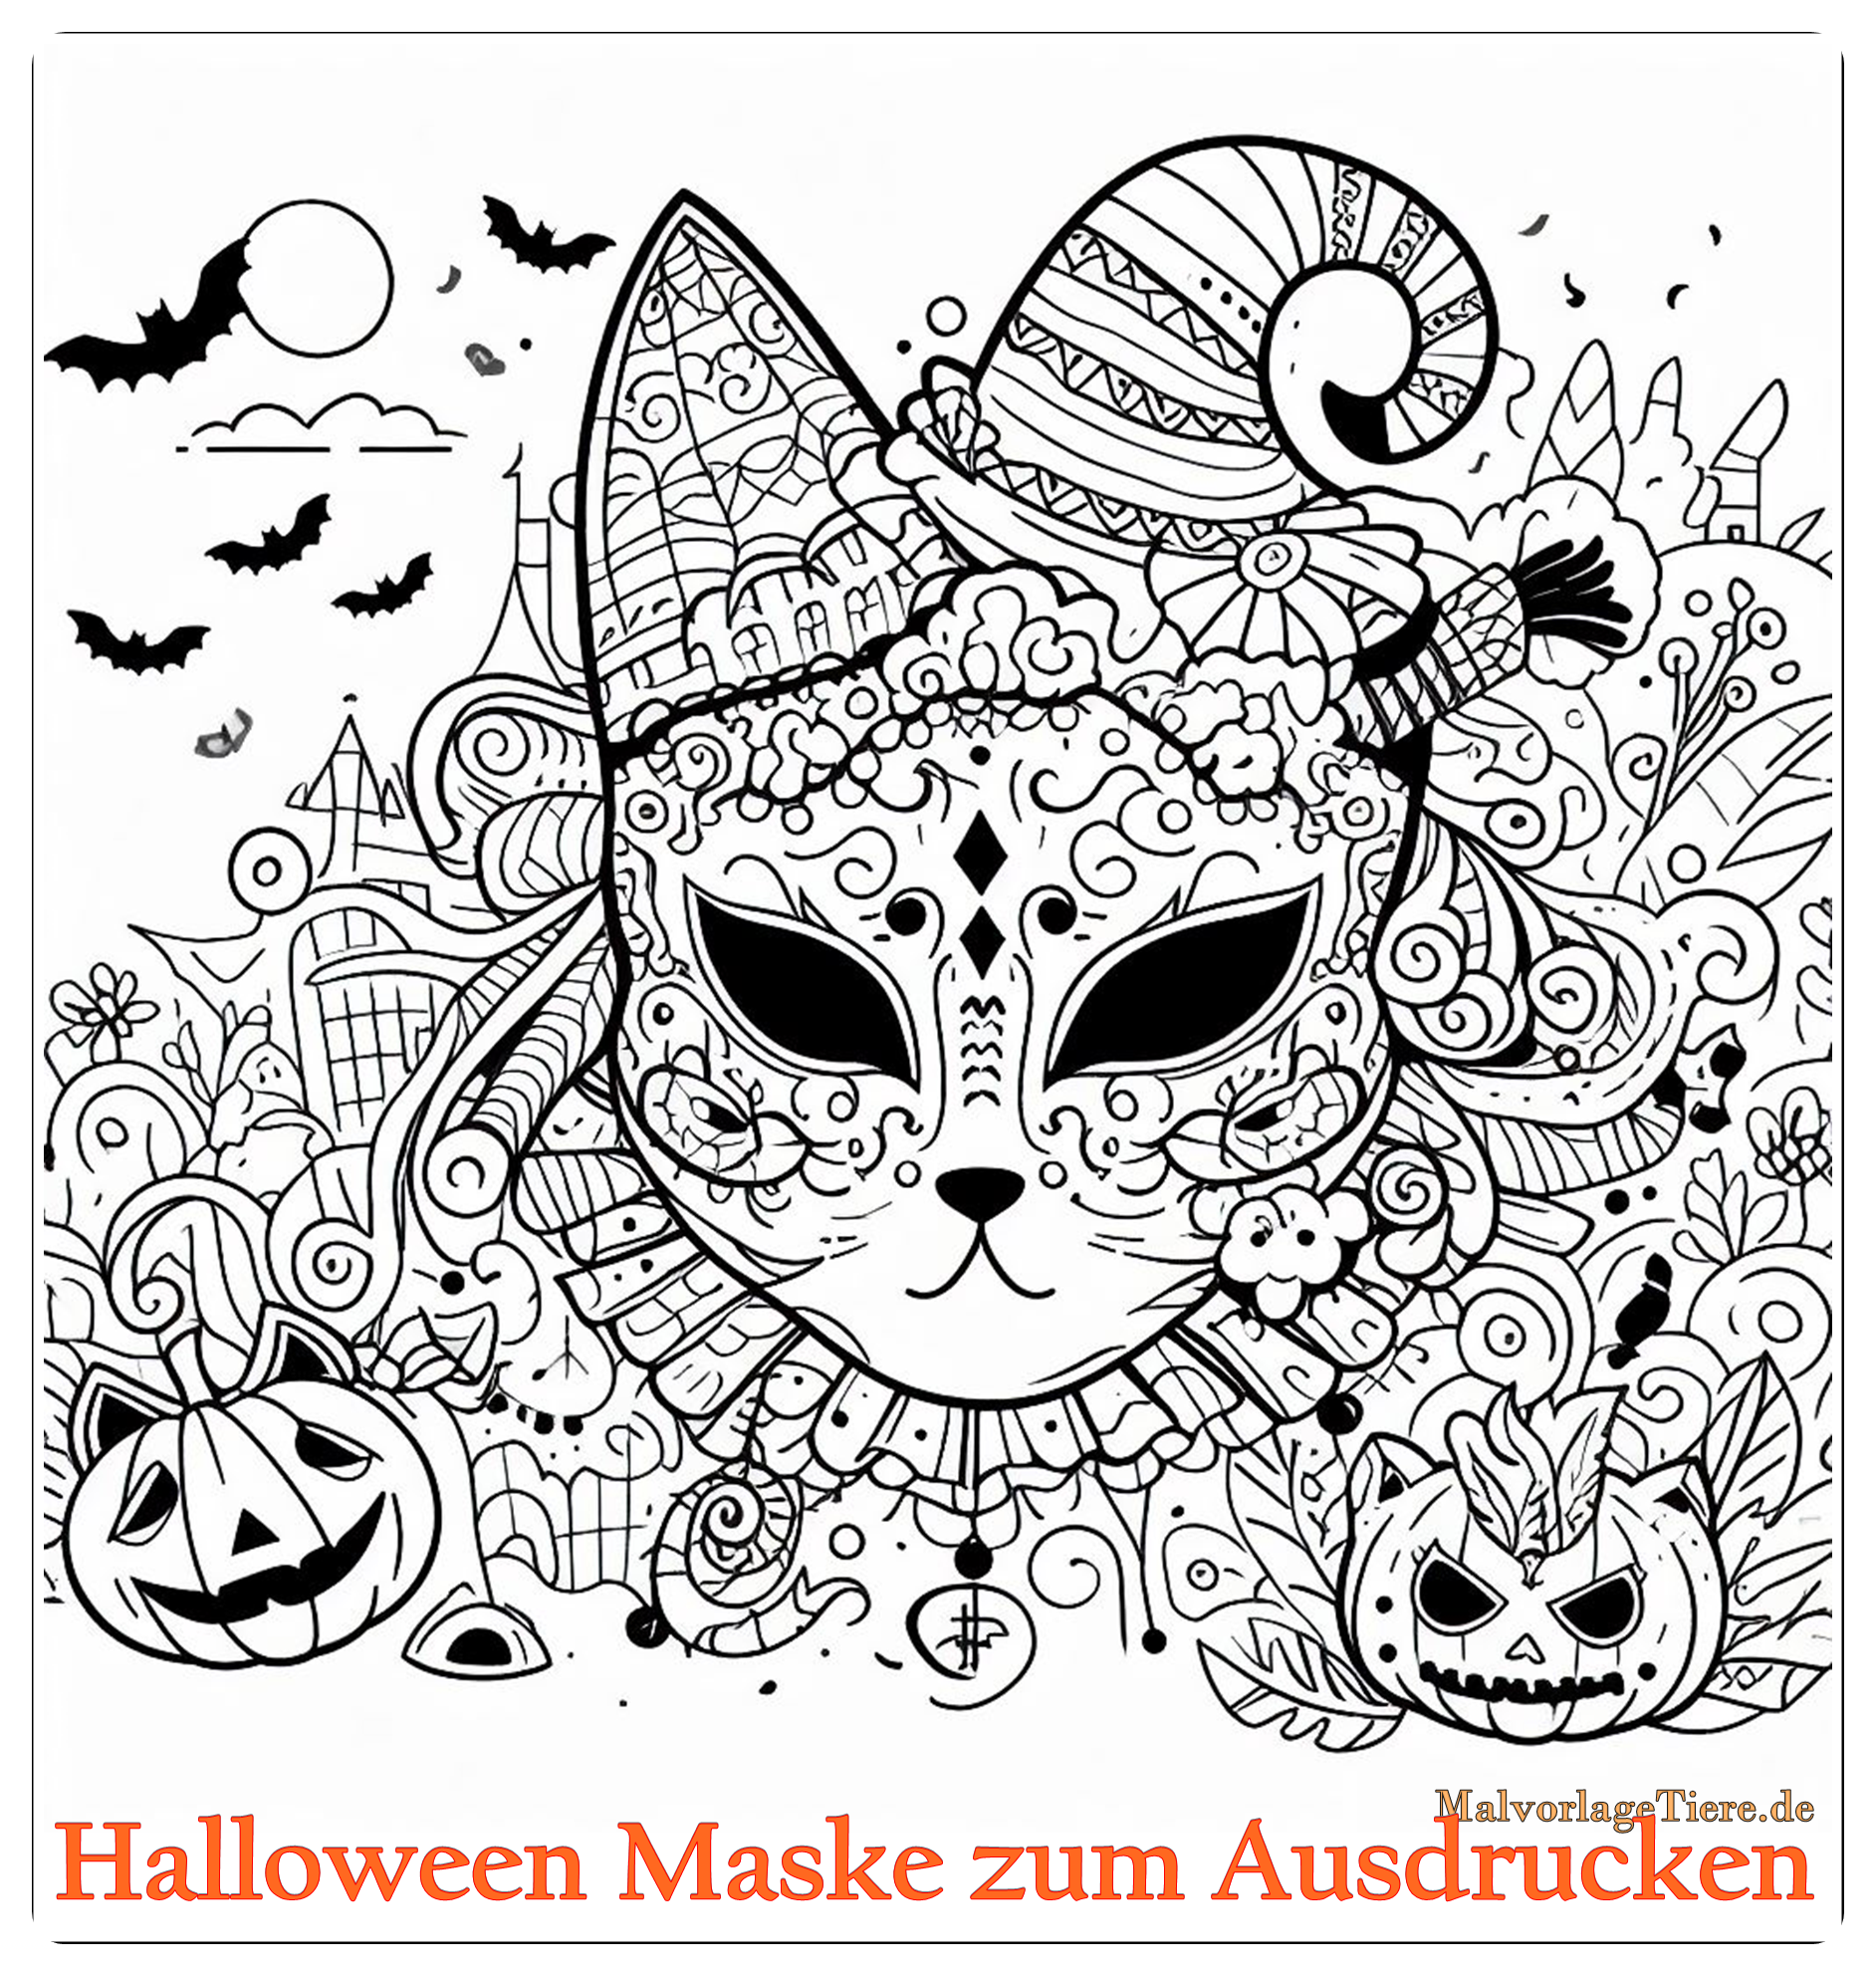 Halloween Maske zum Ausdrucken 01 by malvorlagetiere.de